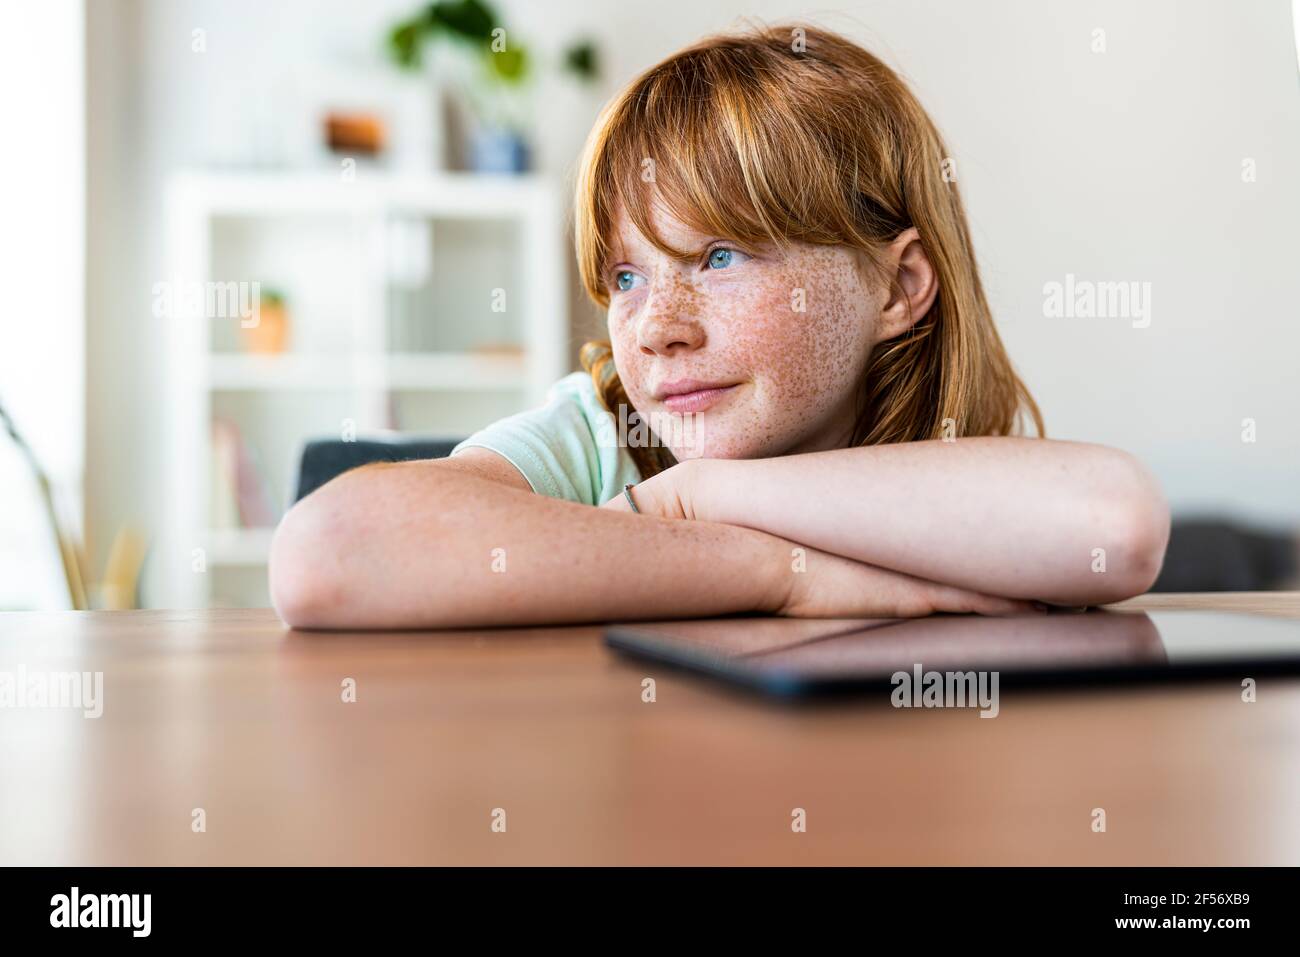 Nachdenkliches rothaariges Mädchen, das wegschaut, während es an einem Tisch sitzt Wohnzimmer Stockfoto